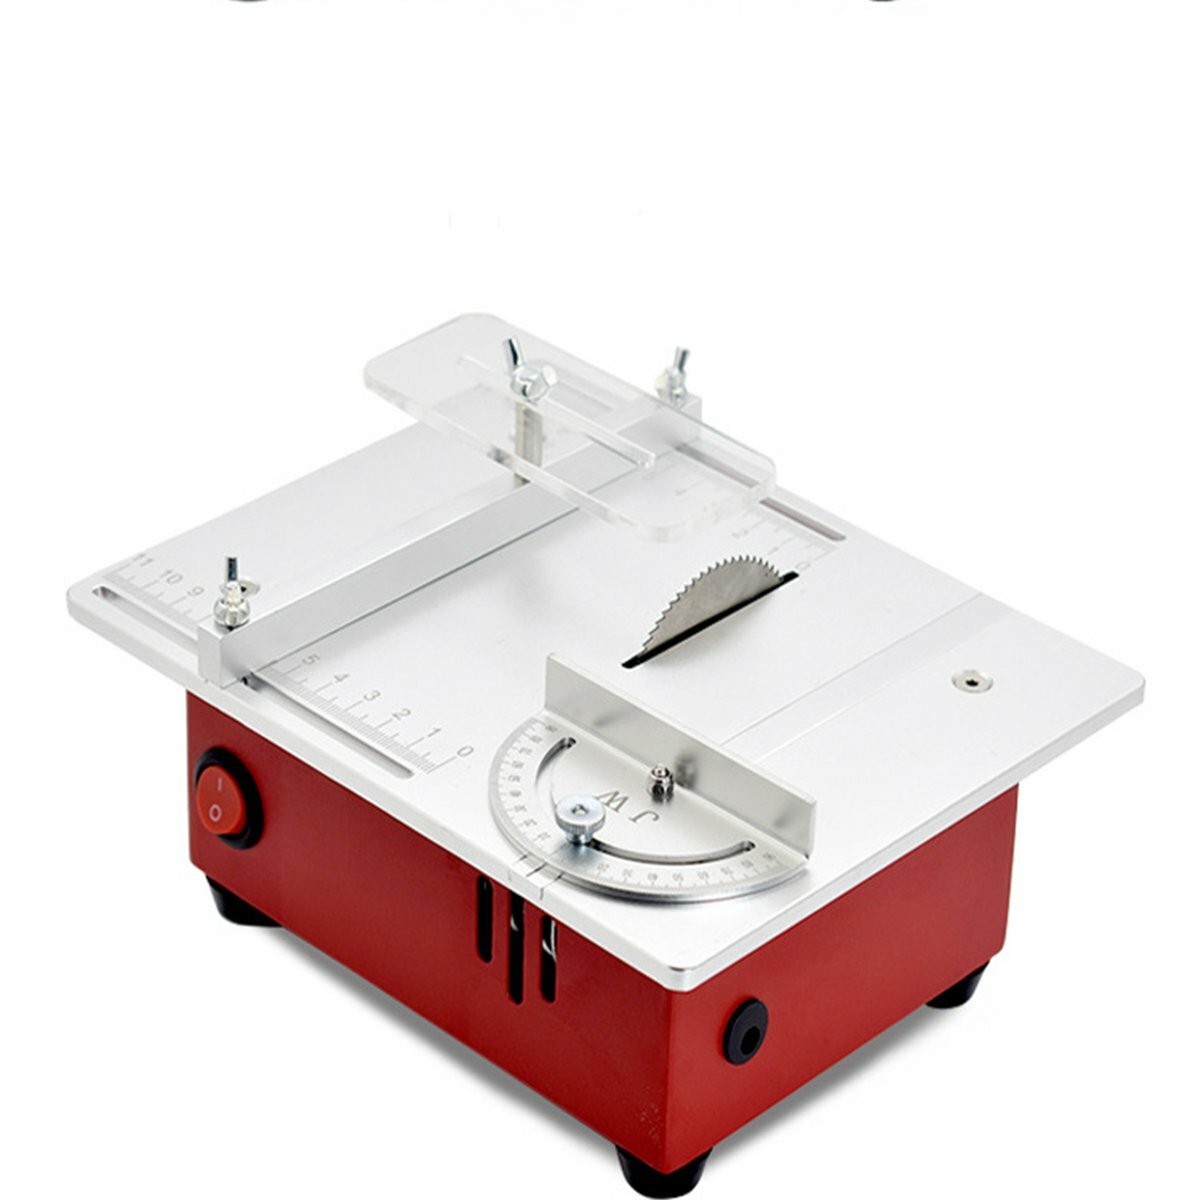 100-240V Mini Tafelzagen Multifunctionele Elektrische Zaag Houtbewerking DIY Draaibank Elektrische Polijstmachine Grinder DIY Model Huishoudelijke Snijmachine